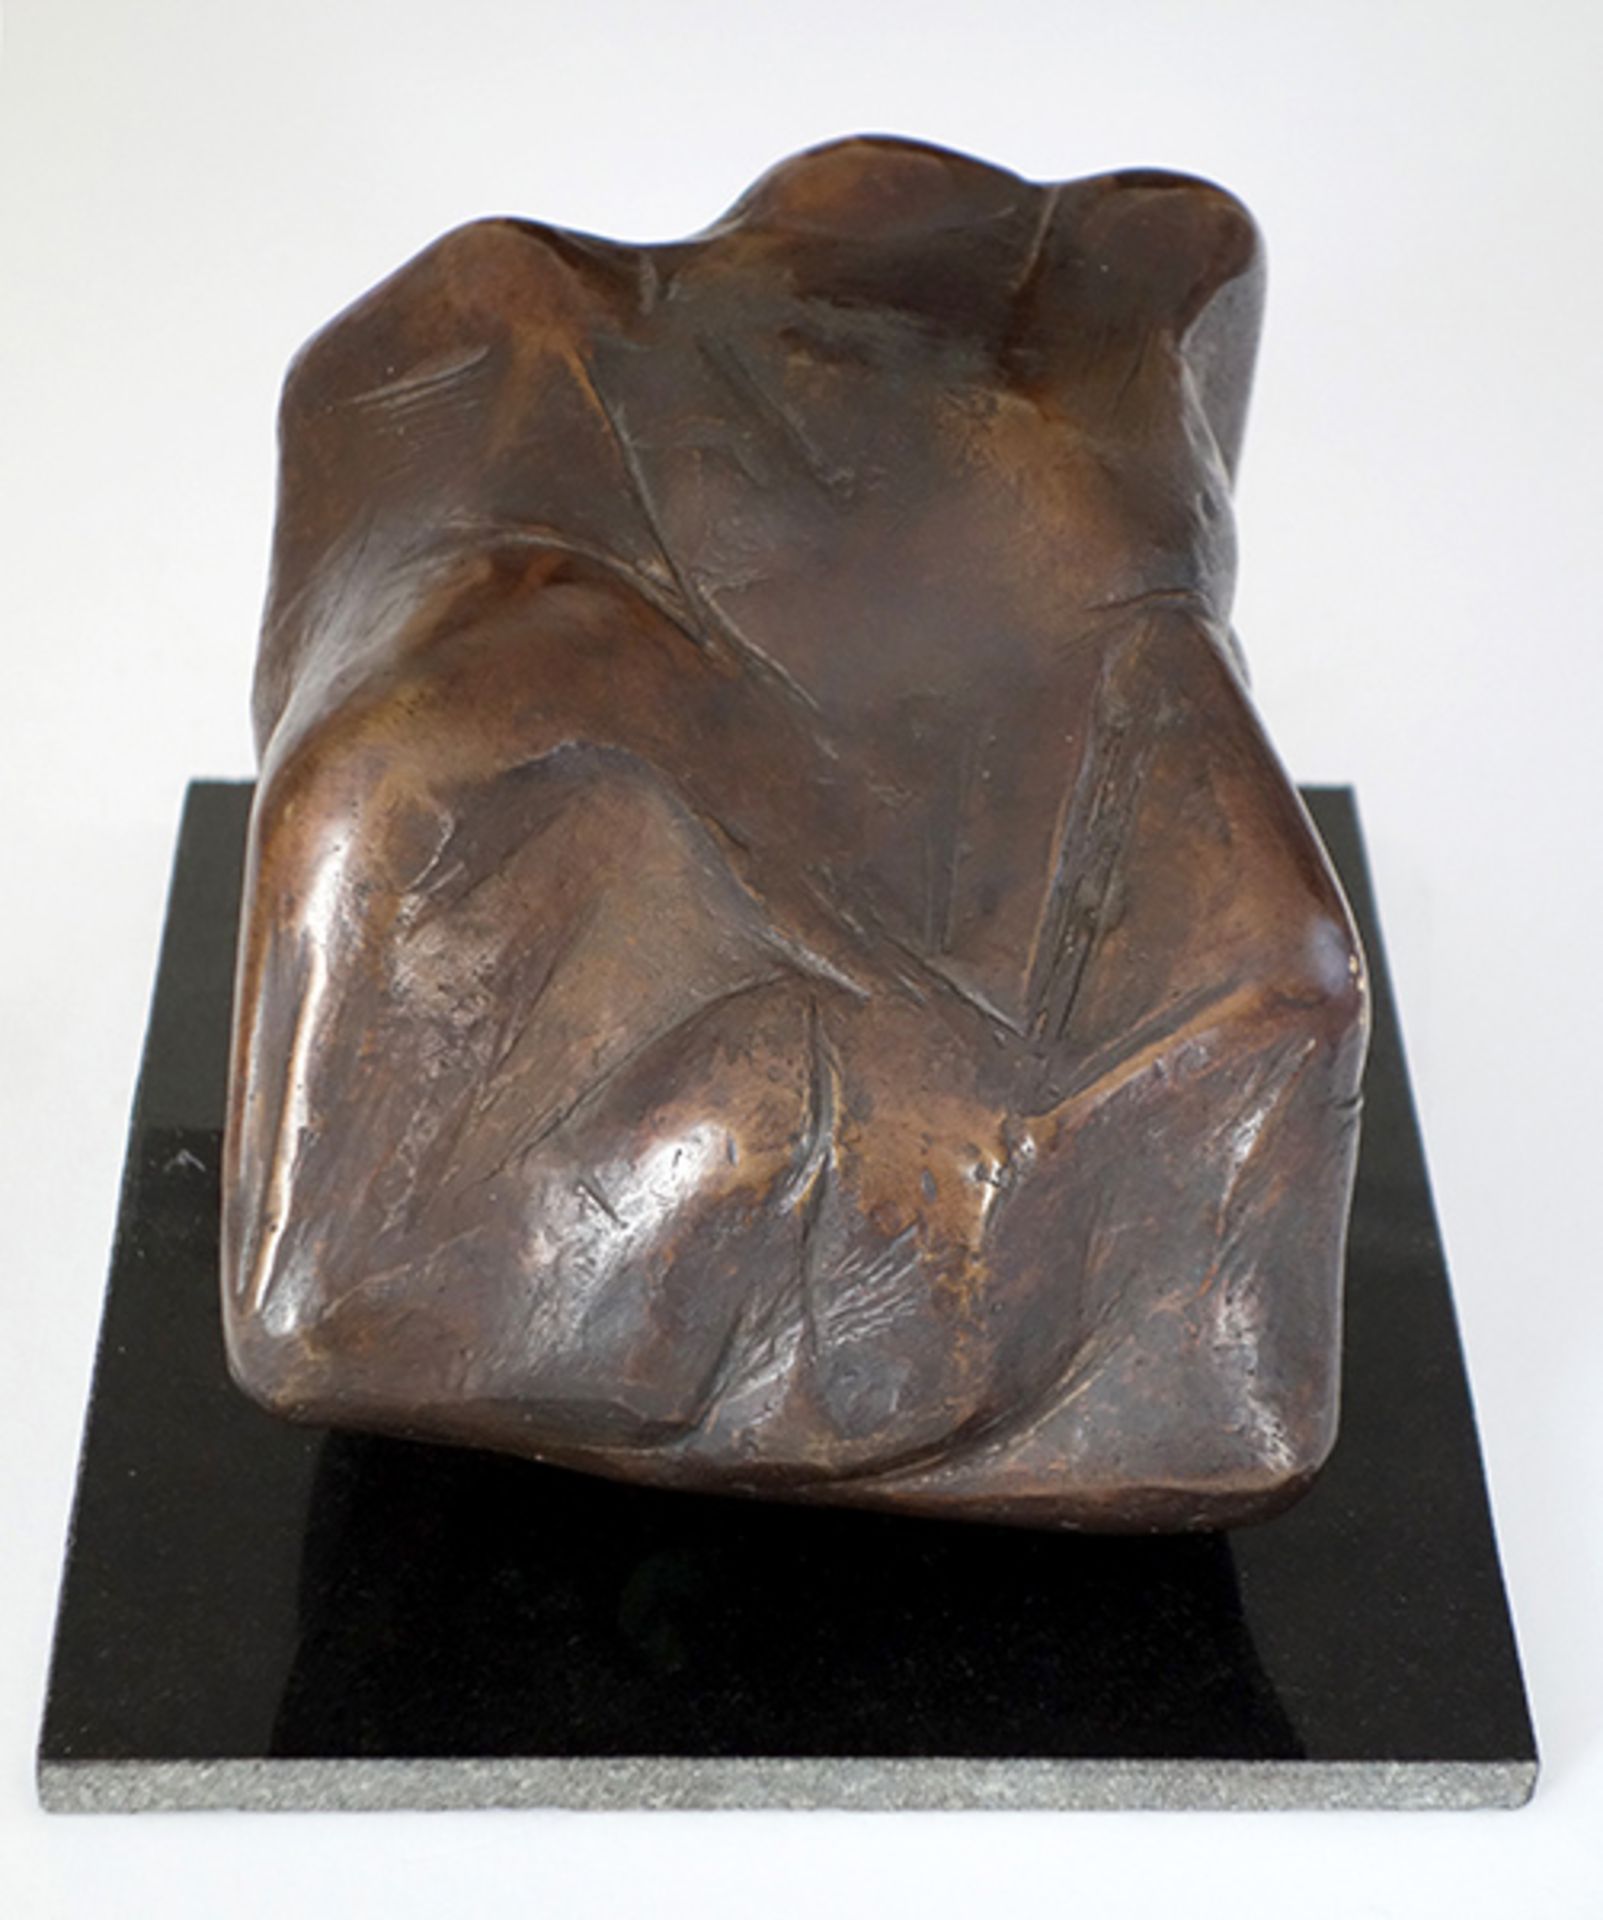 Kuhrt, Rolf Bronze patiniert, 13,2 x 19,5 x 11 cm Wolke Sieben (2000) Auf der Unterseite - Bild 2 aus 4